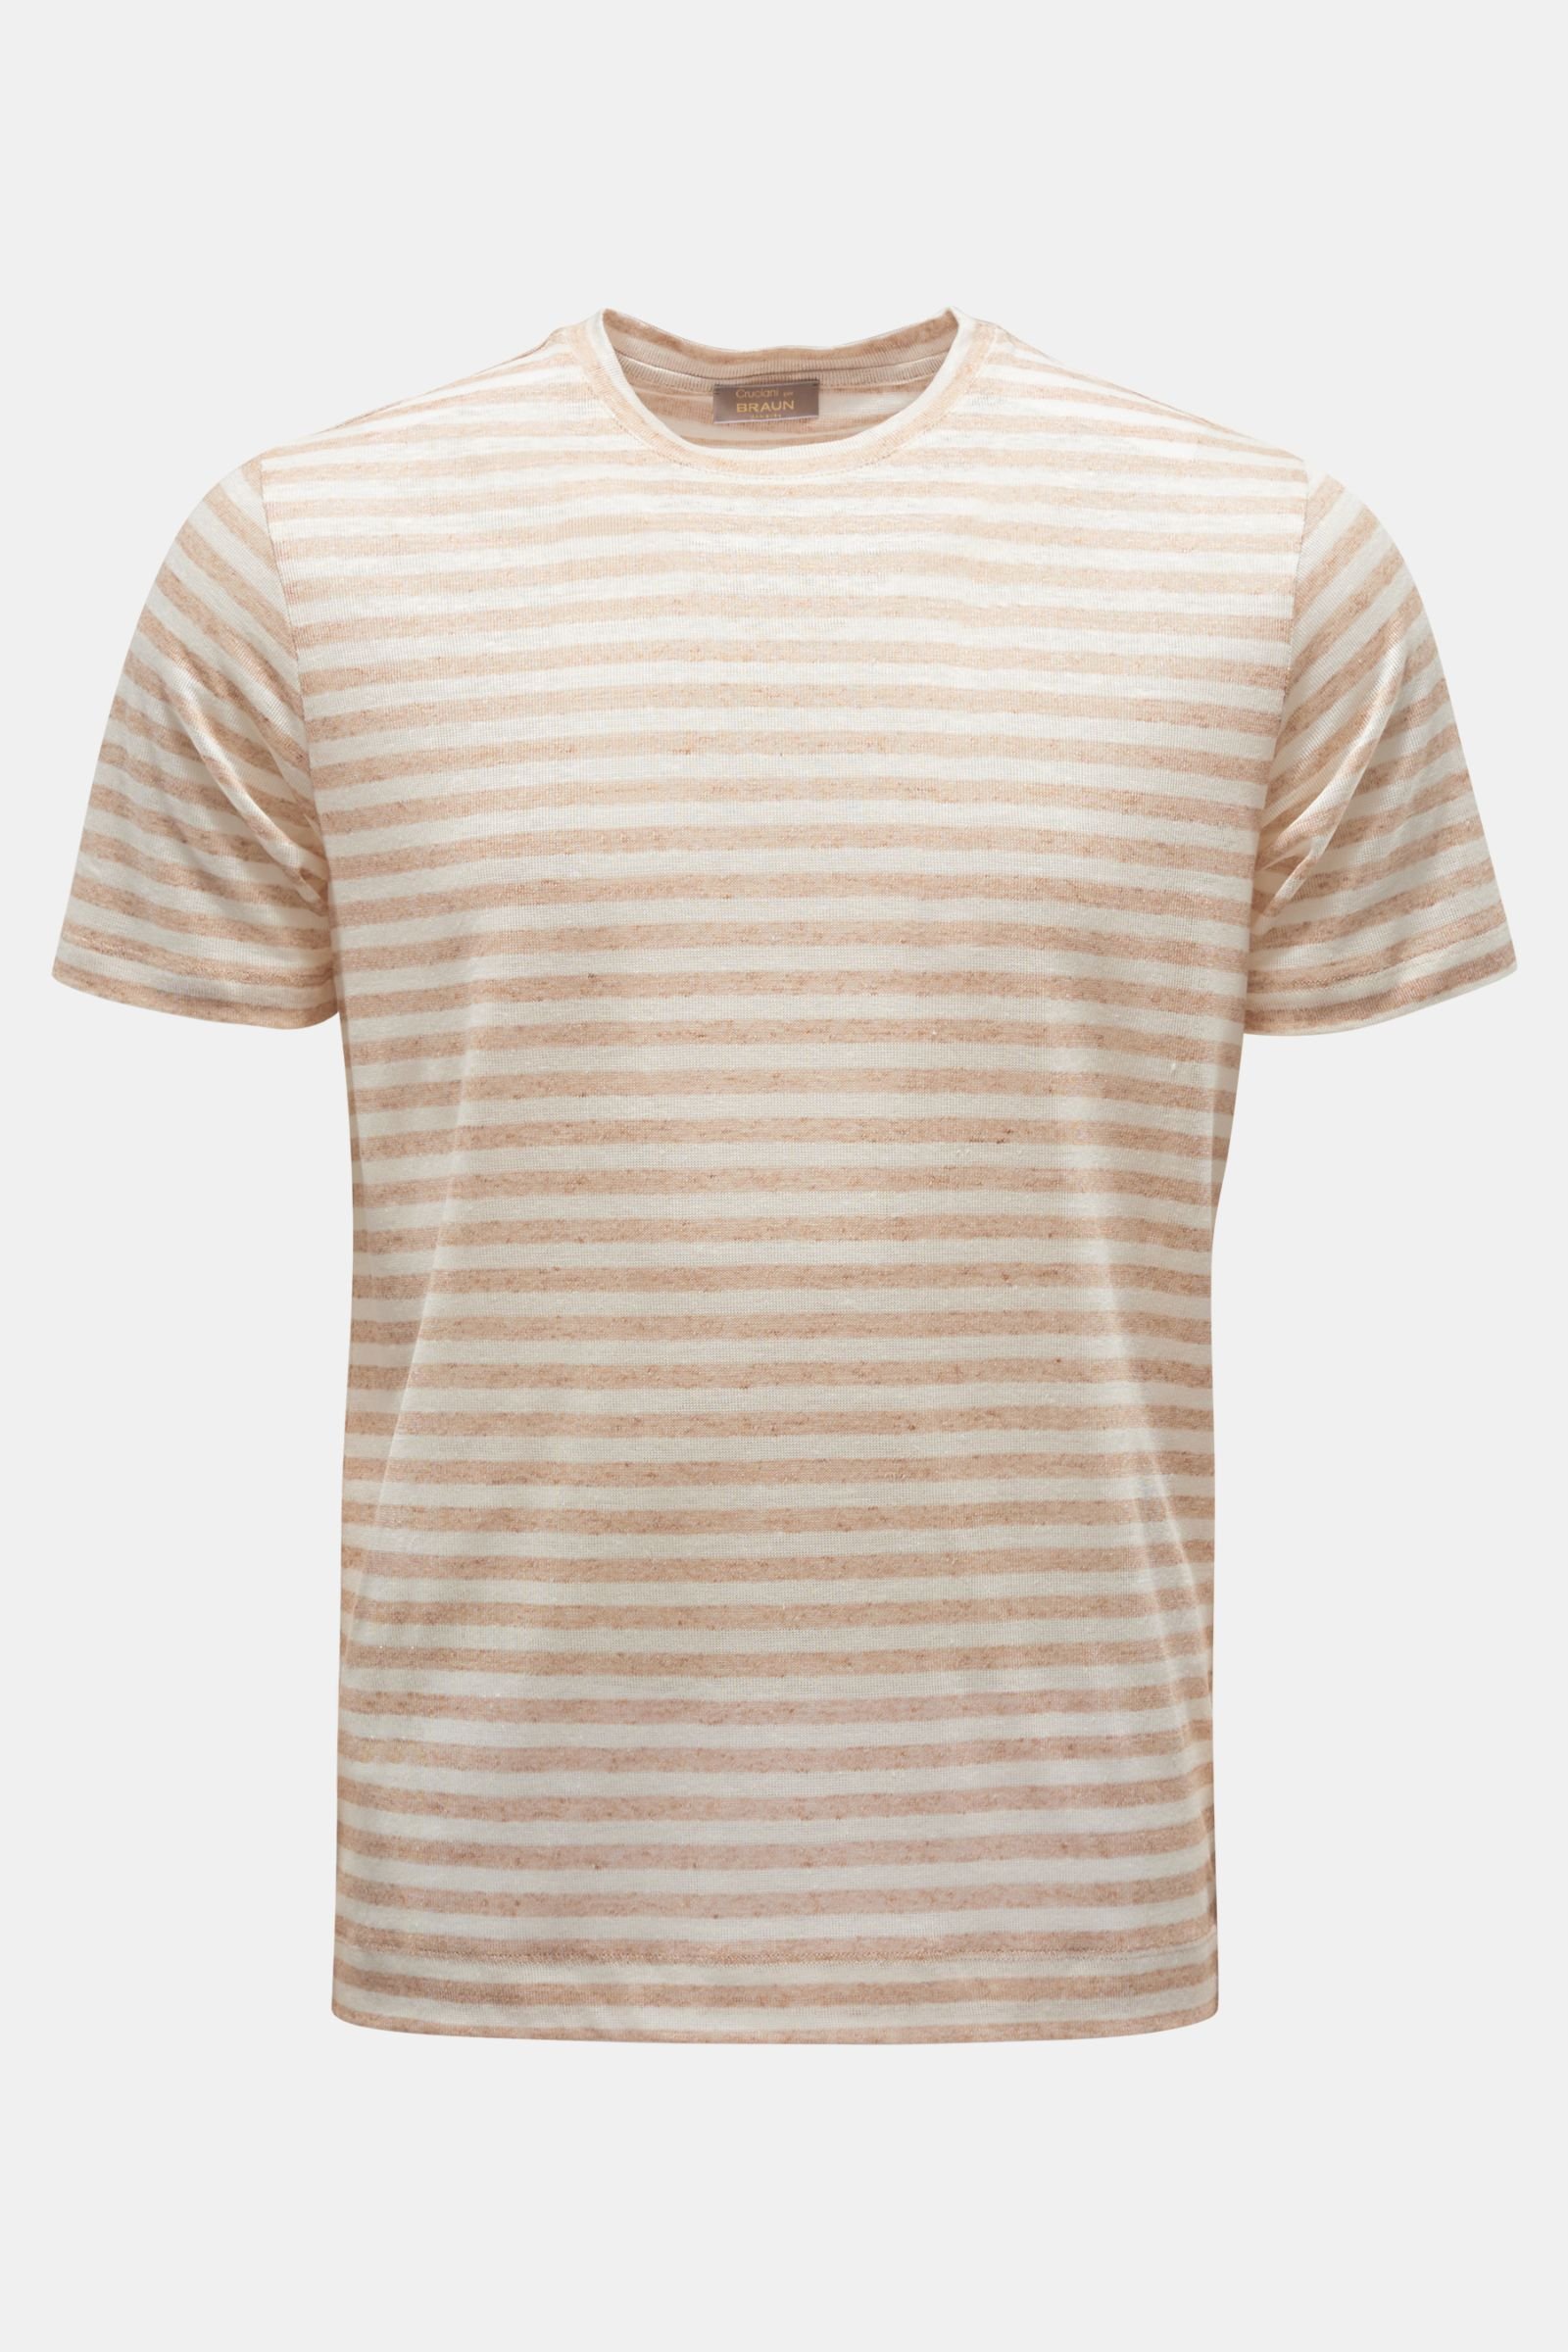 Linen crew neck T-shirt light brown/cream striped